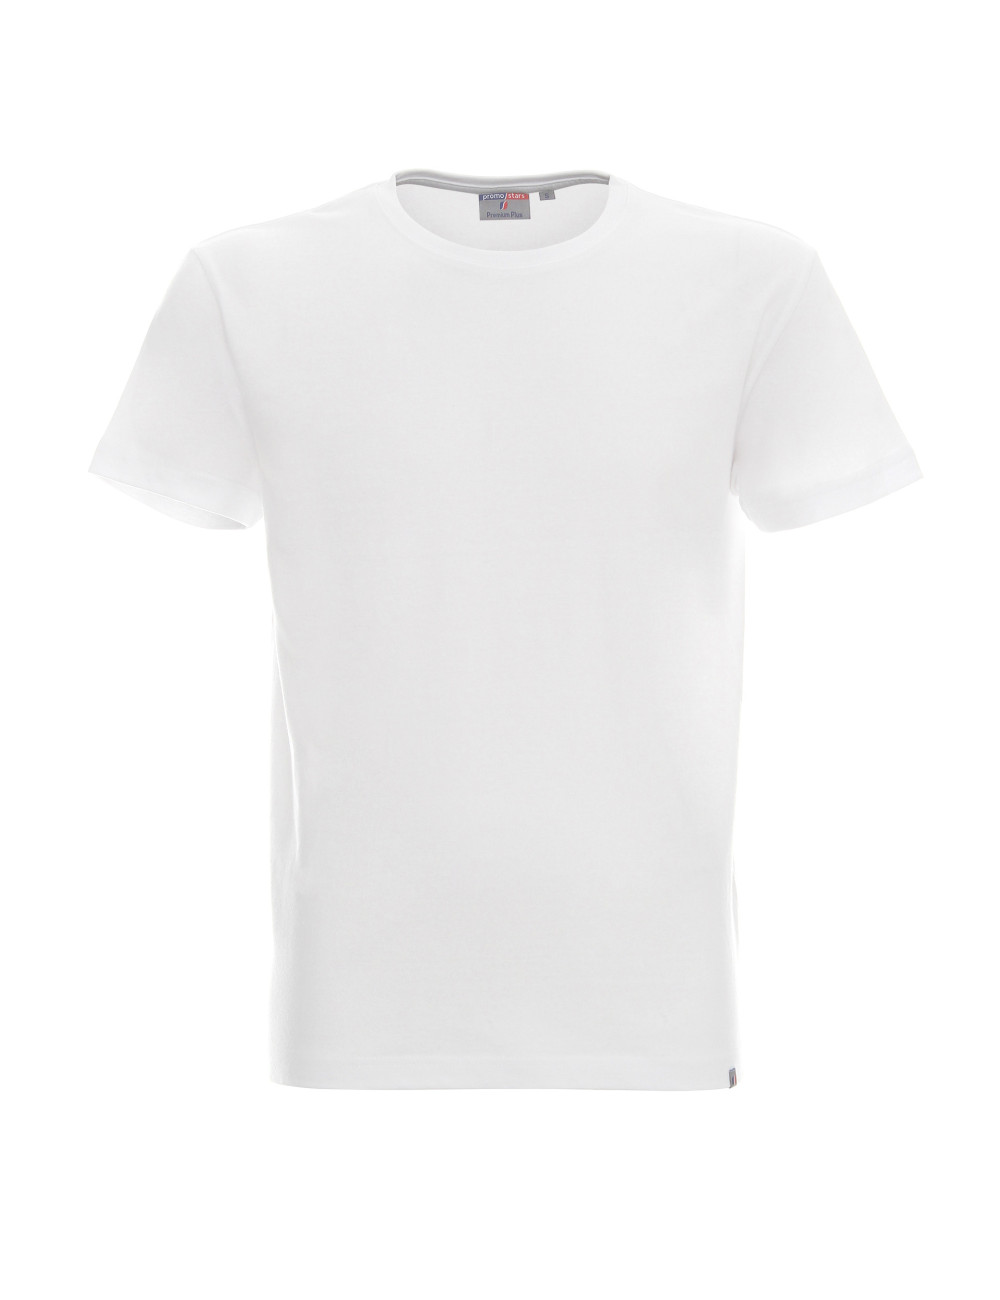 Premium plus koszulka męska biały Crimson Cut